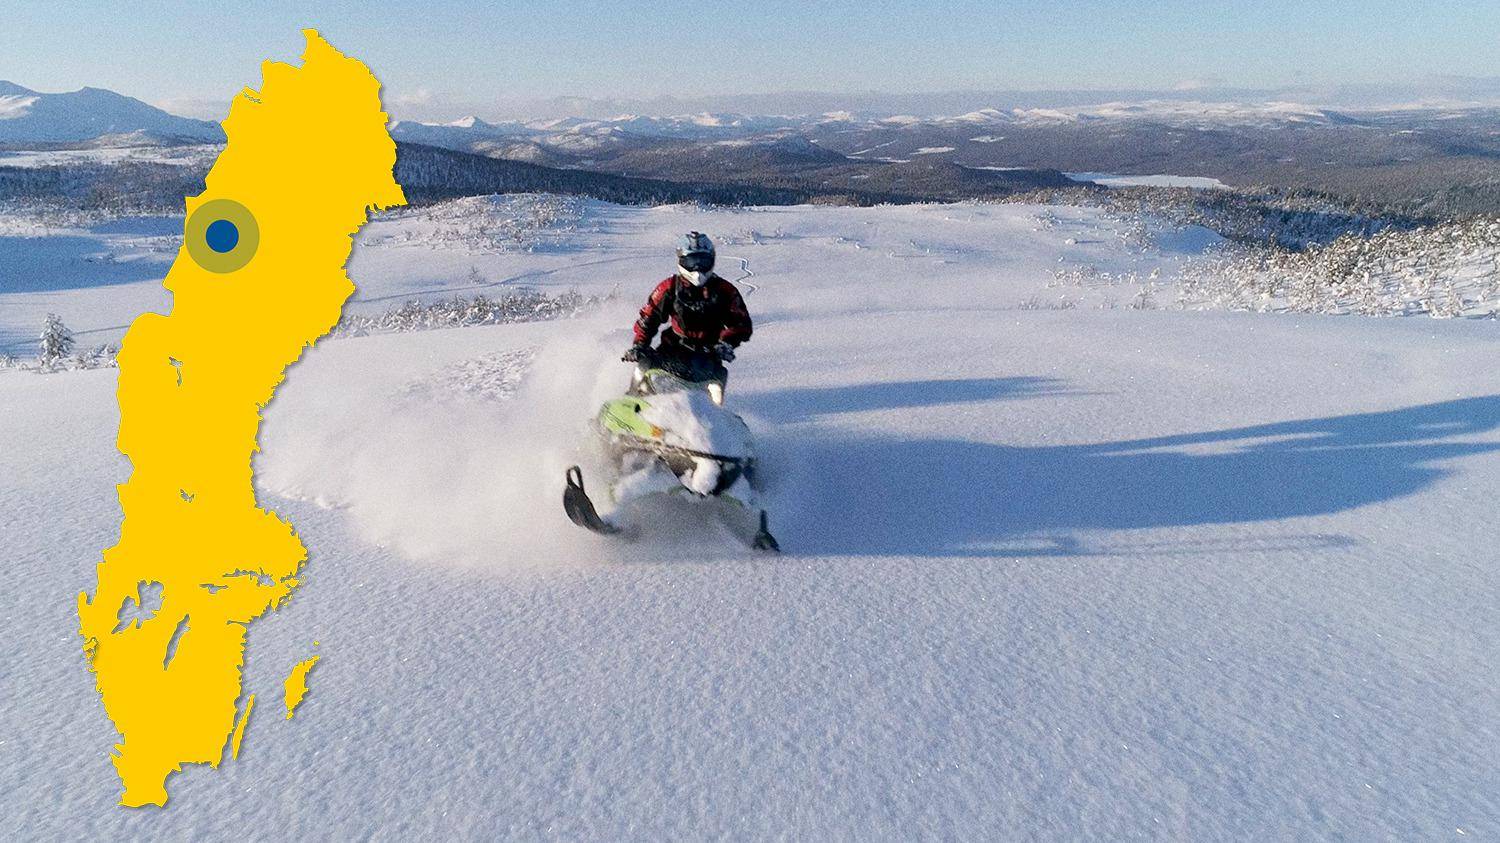 Eine Person fährt mit einem Schneemobil auf einem schneebedeckten Berg. Im Hintergrund gibt es einen Blick auf mehrere Berge. Auf dem Bild ist eine gelbe Schwedenkarte mit einem blauen Punkt zu sehen, der Järvfjället markiert.